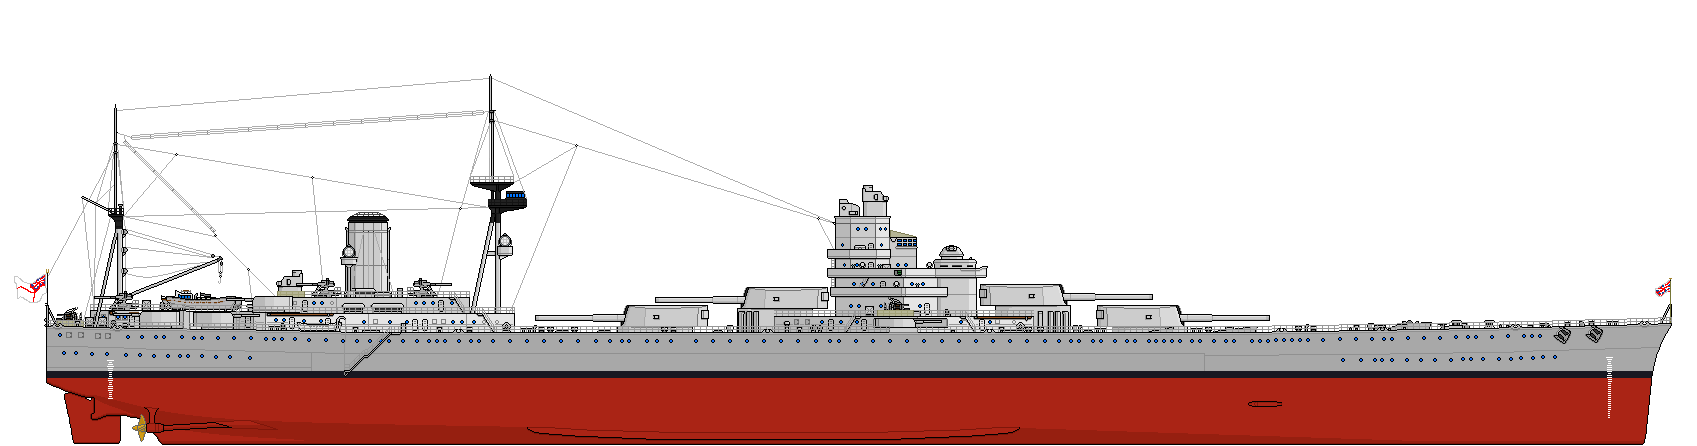 维多利亚级战列舰设计图